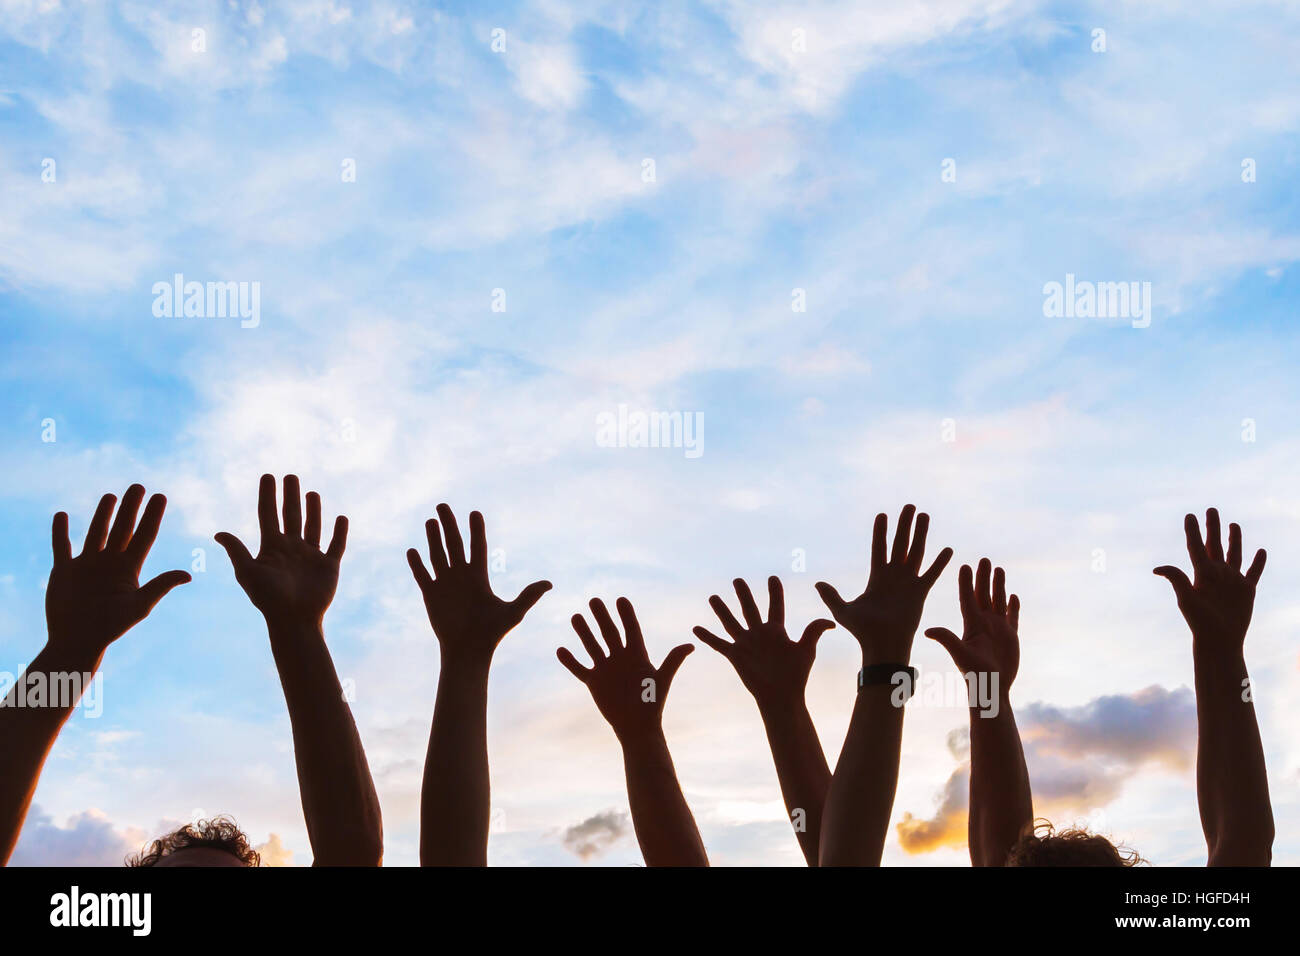 Gemeinschaftsinitiative oder Freiwilligenarbeit Konzept, die Hände der Gruppe von Menschen in den Himmel, silhouette Stockfoto